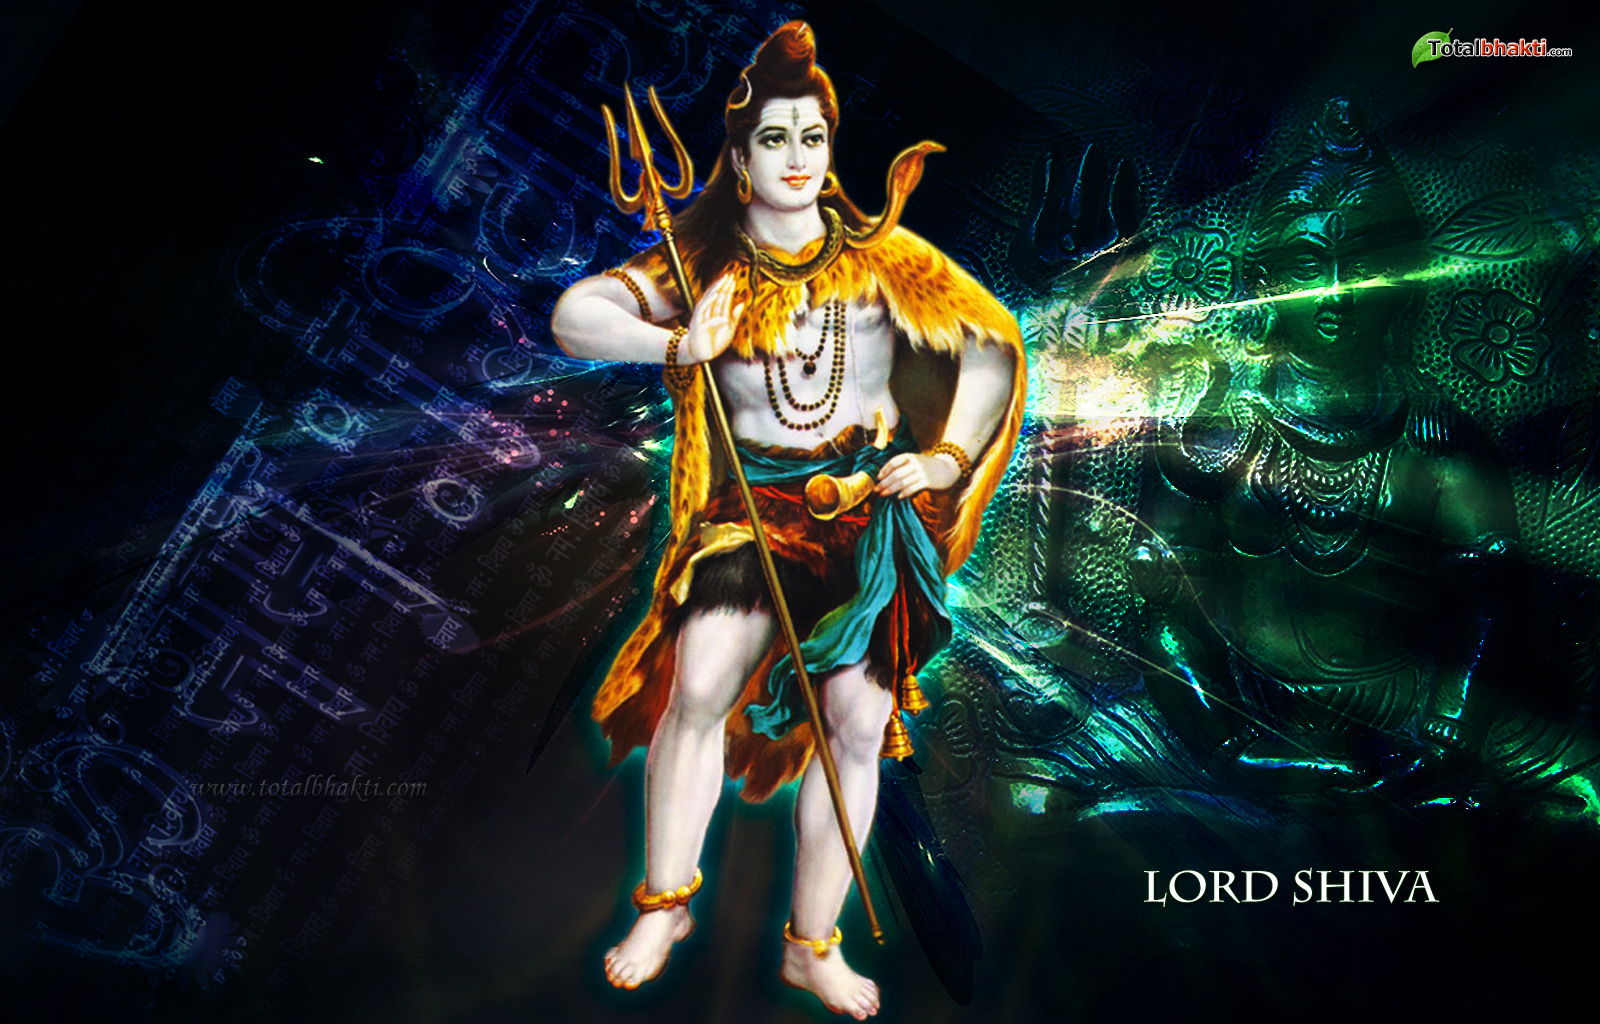 Shiva wallpaper, Hindu wallpaper, lord shiva wallpaper, dark green